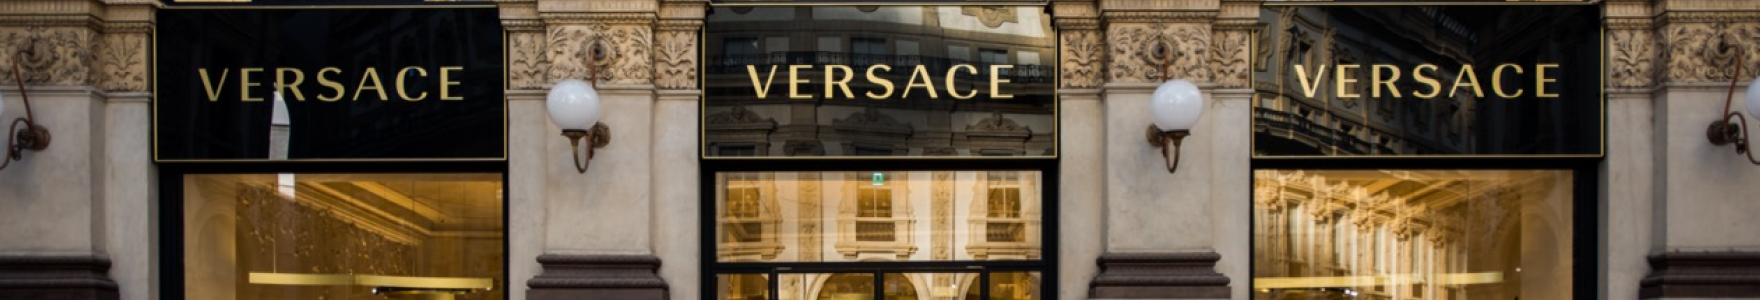 Versace 背景